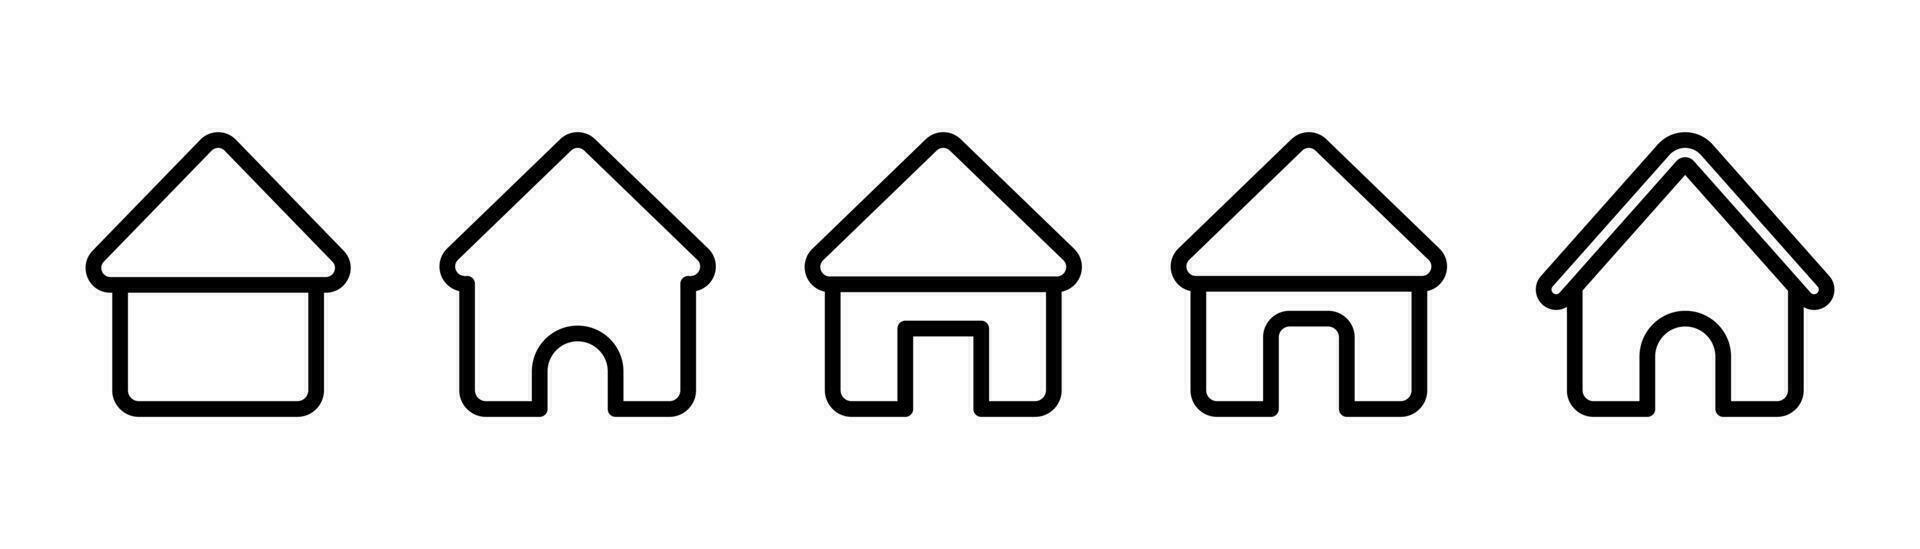 huis icoon set. schets huis symbool. huis icoon in zwart. lijn huis silhouet. schets huis pictogram in vector